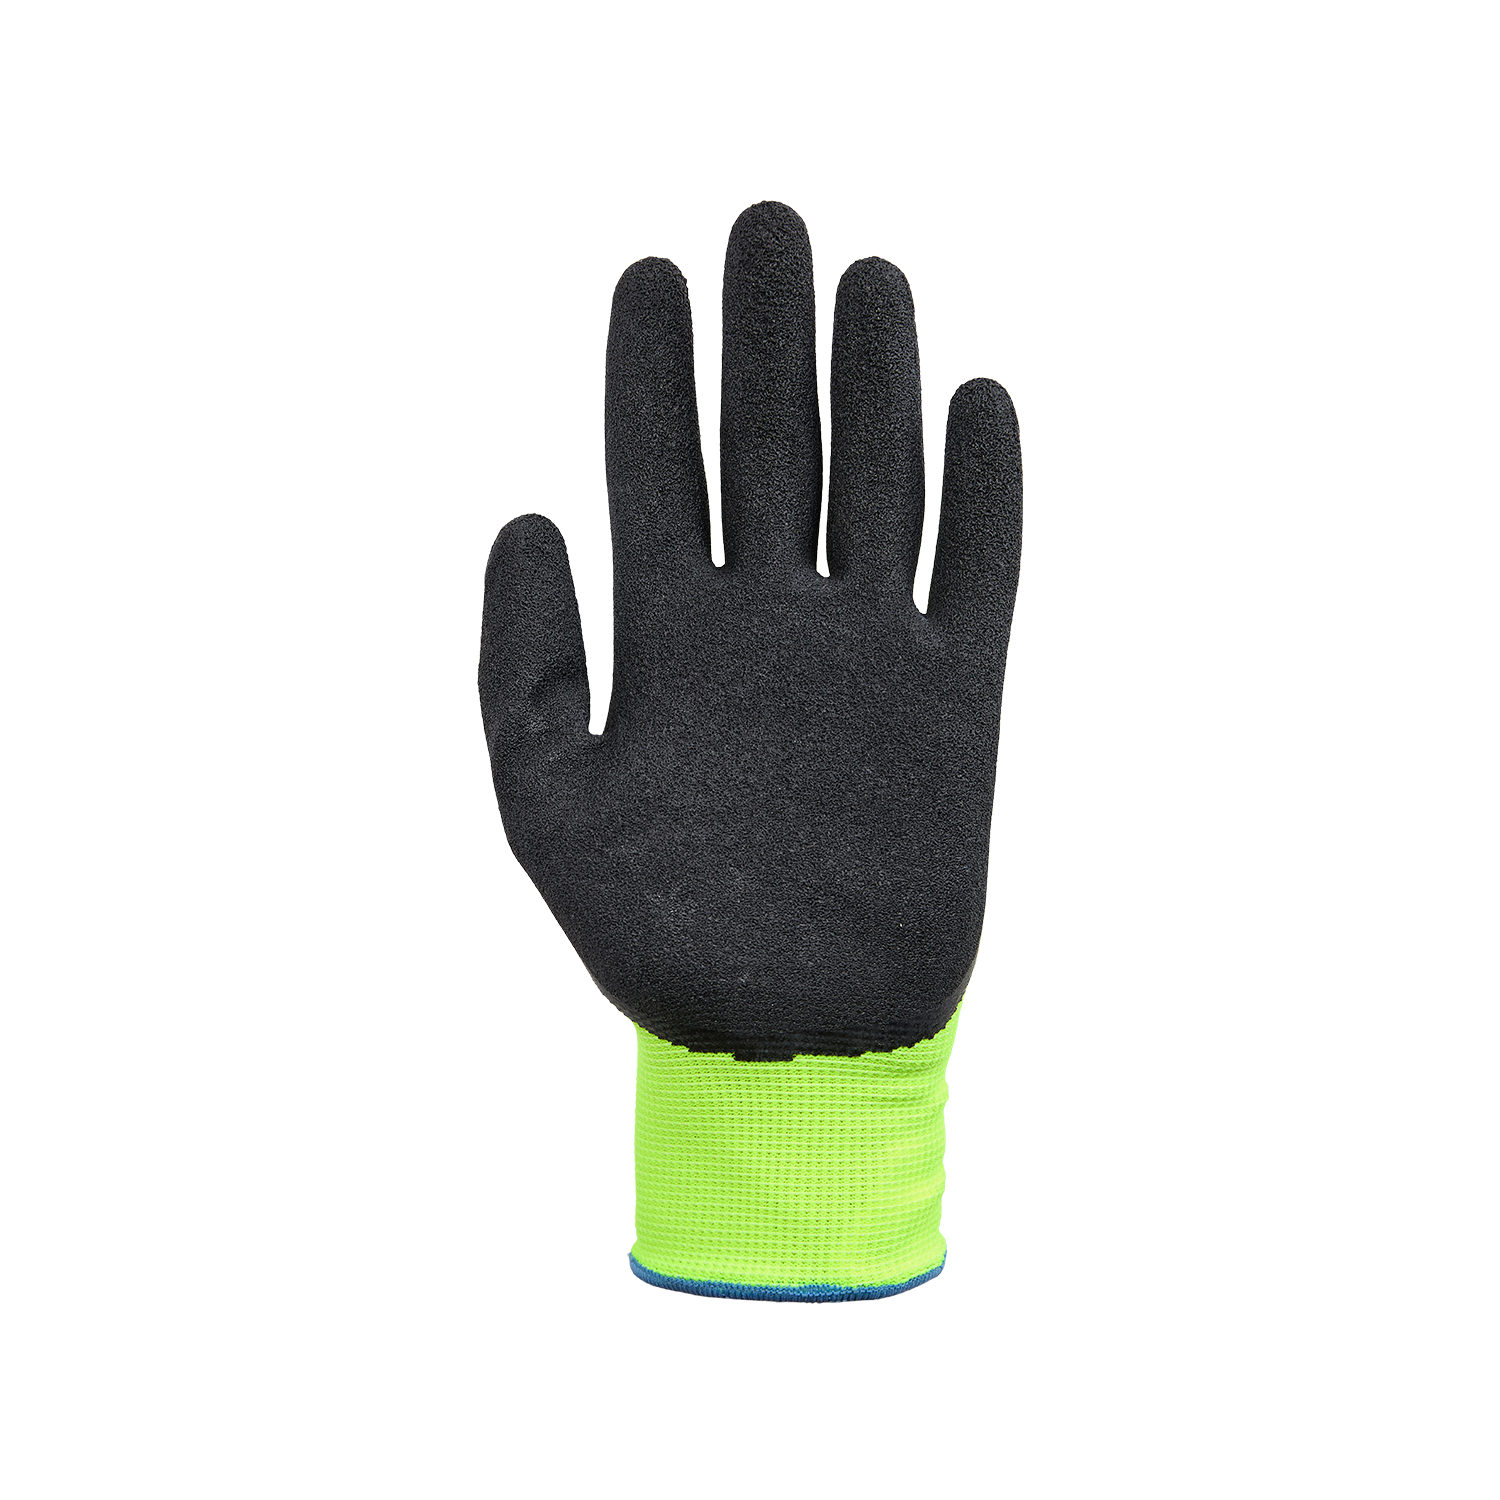 NORSE Light assembly gloves size 8